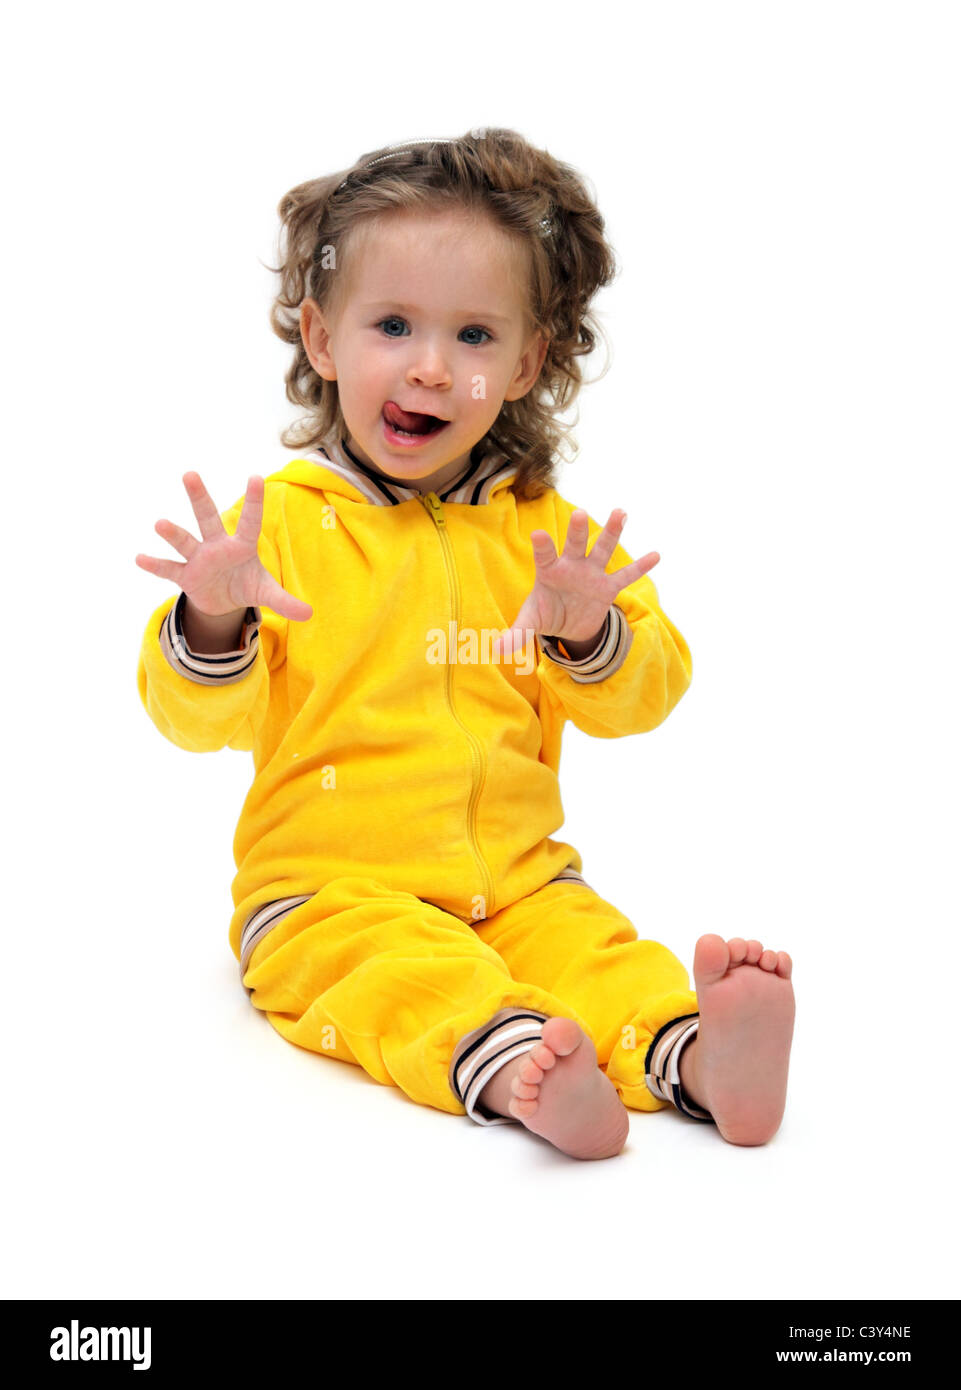 Fun bambina nella seduta di colore giallo su bianco Foto Stock